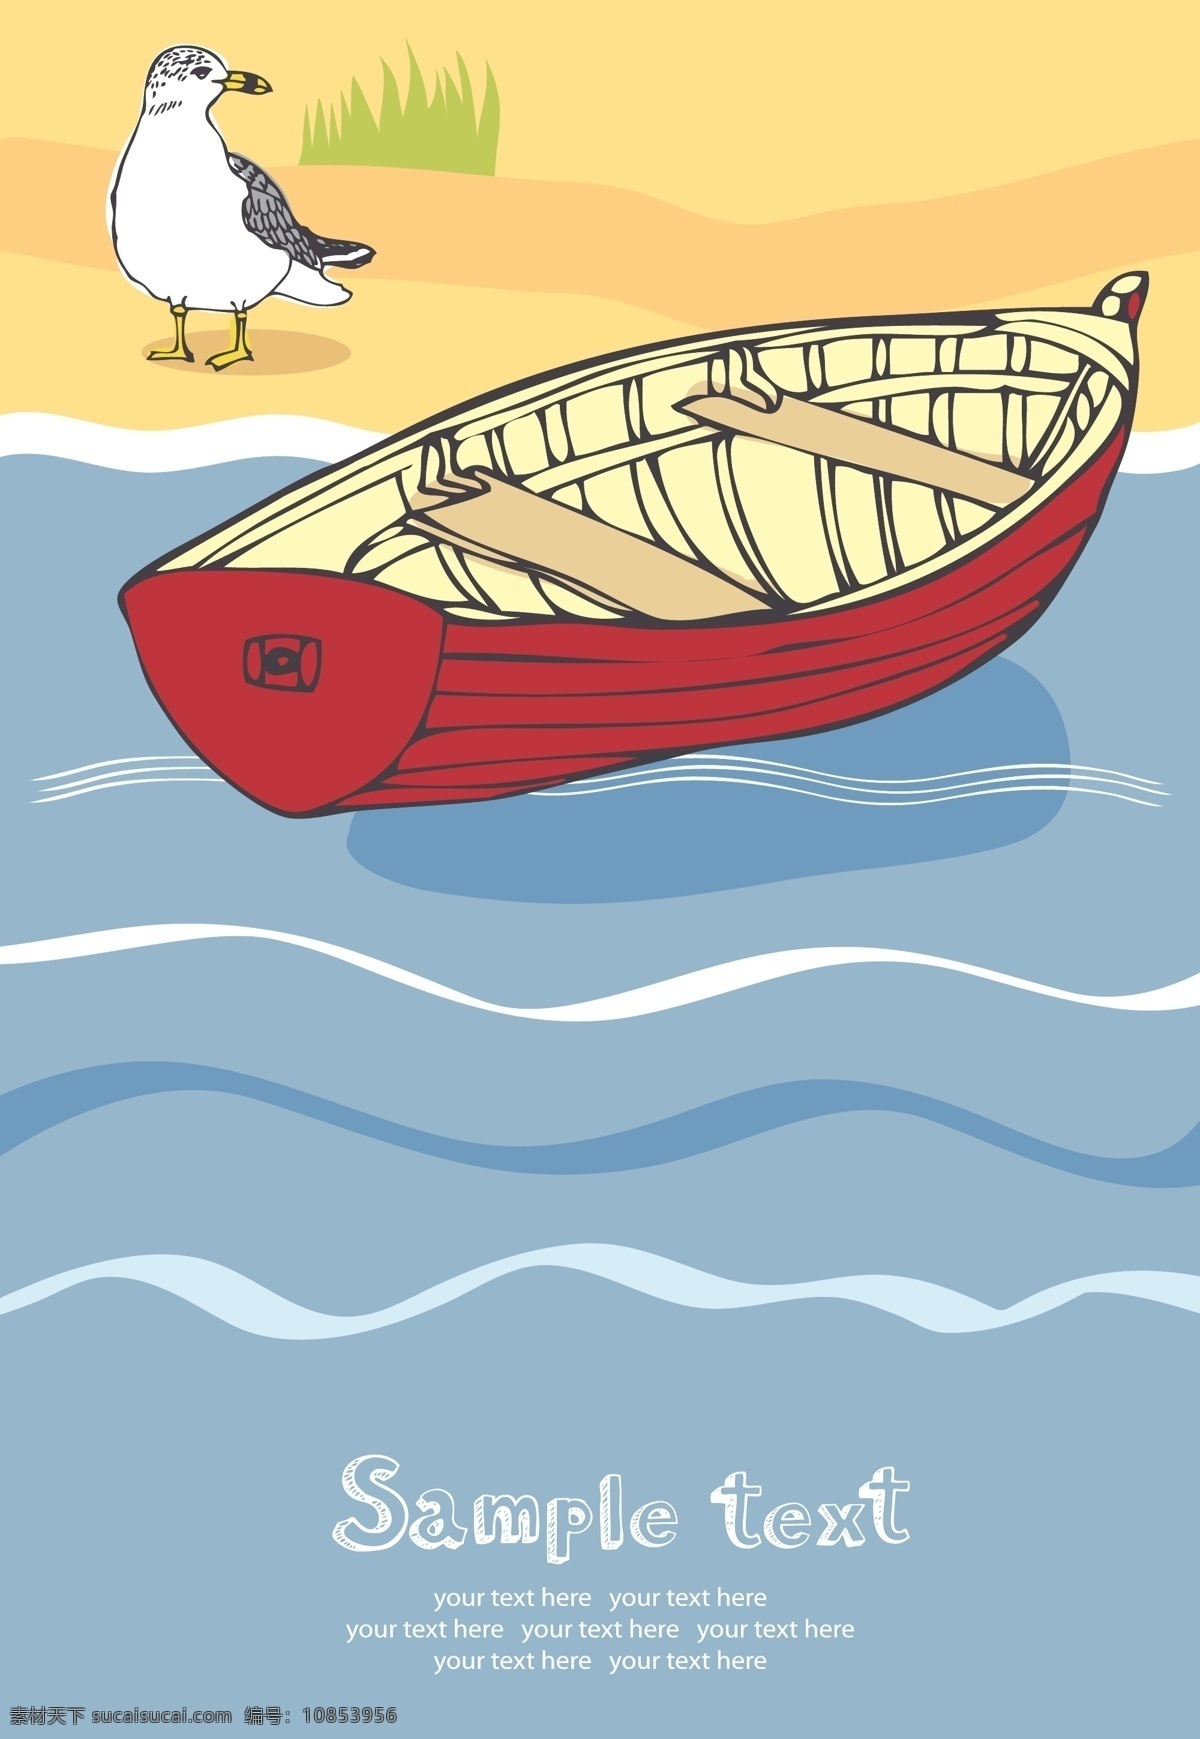 海边 小船 矢量 贝壳 插画风格 灯塔 度假 帆船 海鸥 海上 海滩 海洋 假期 夏日 休闲 眺望台 木船 救生圈 矢量图 其他矢量图